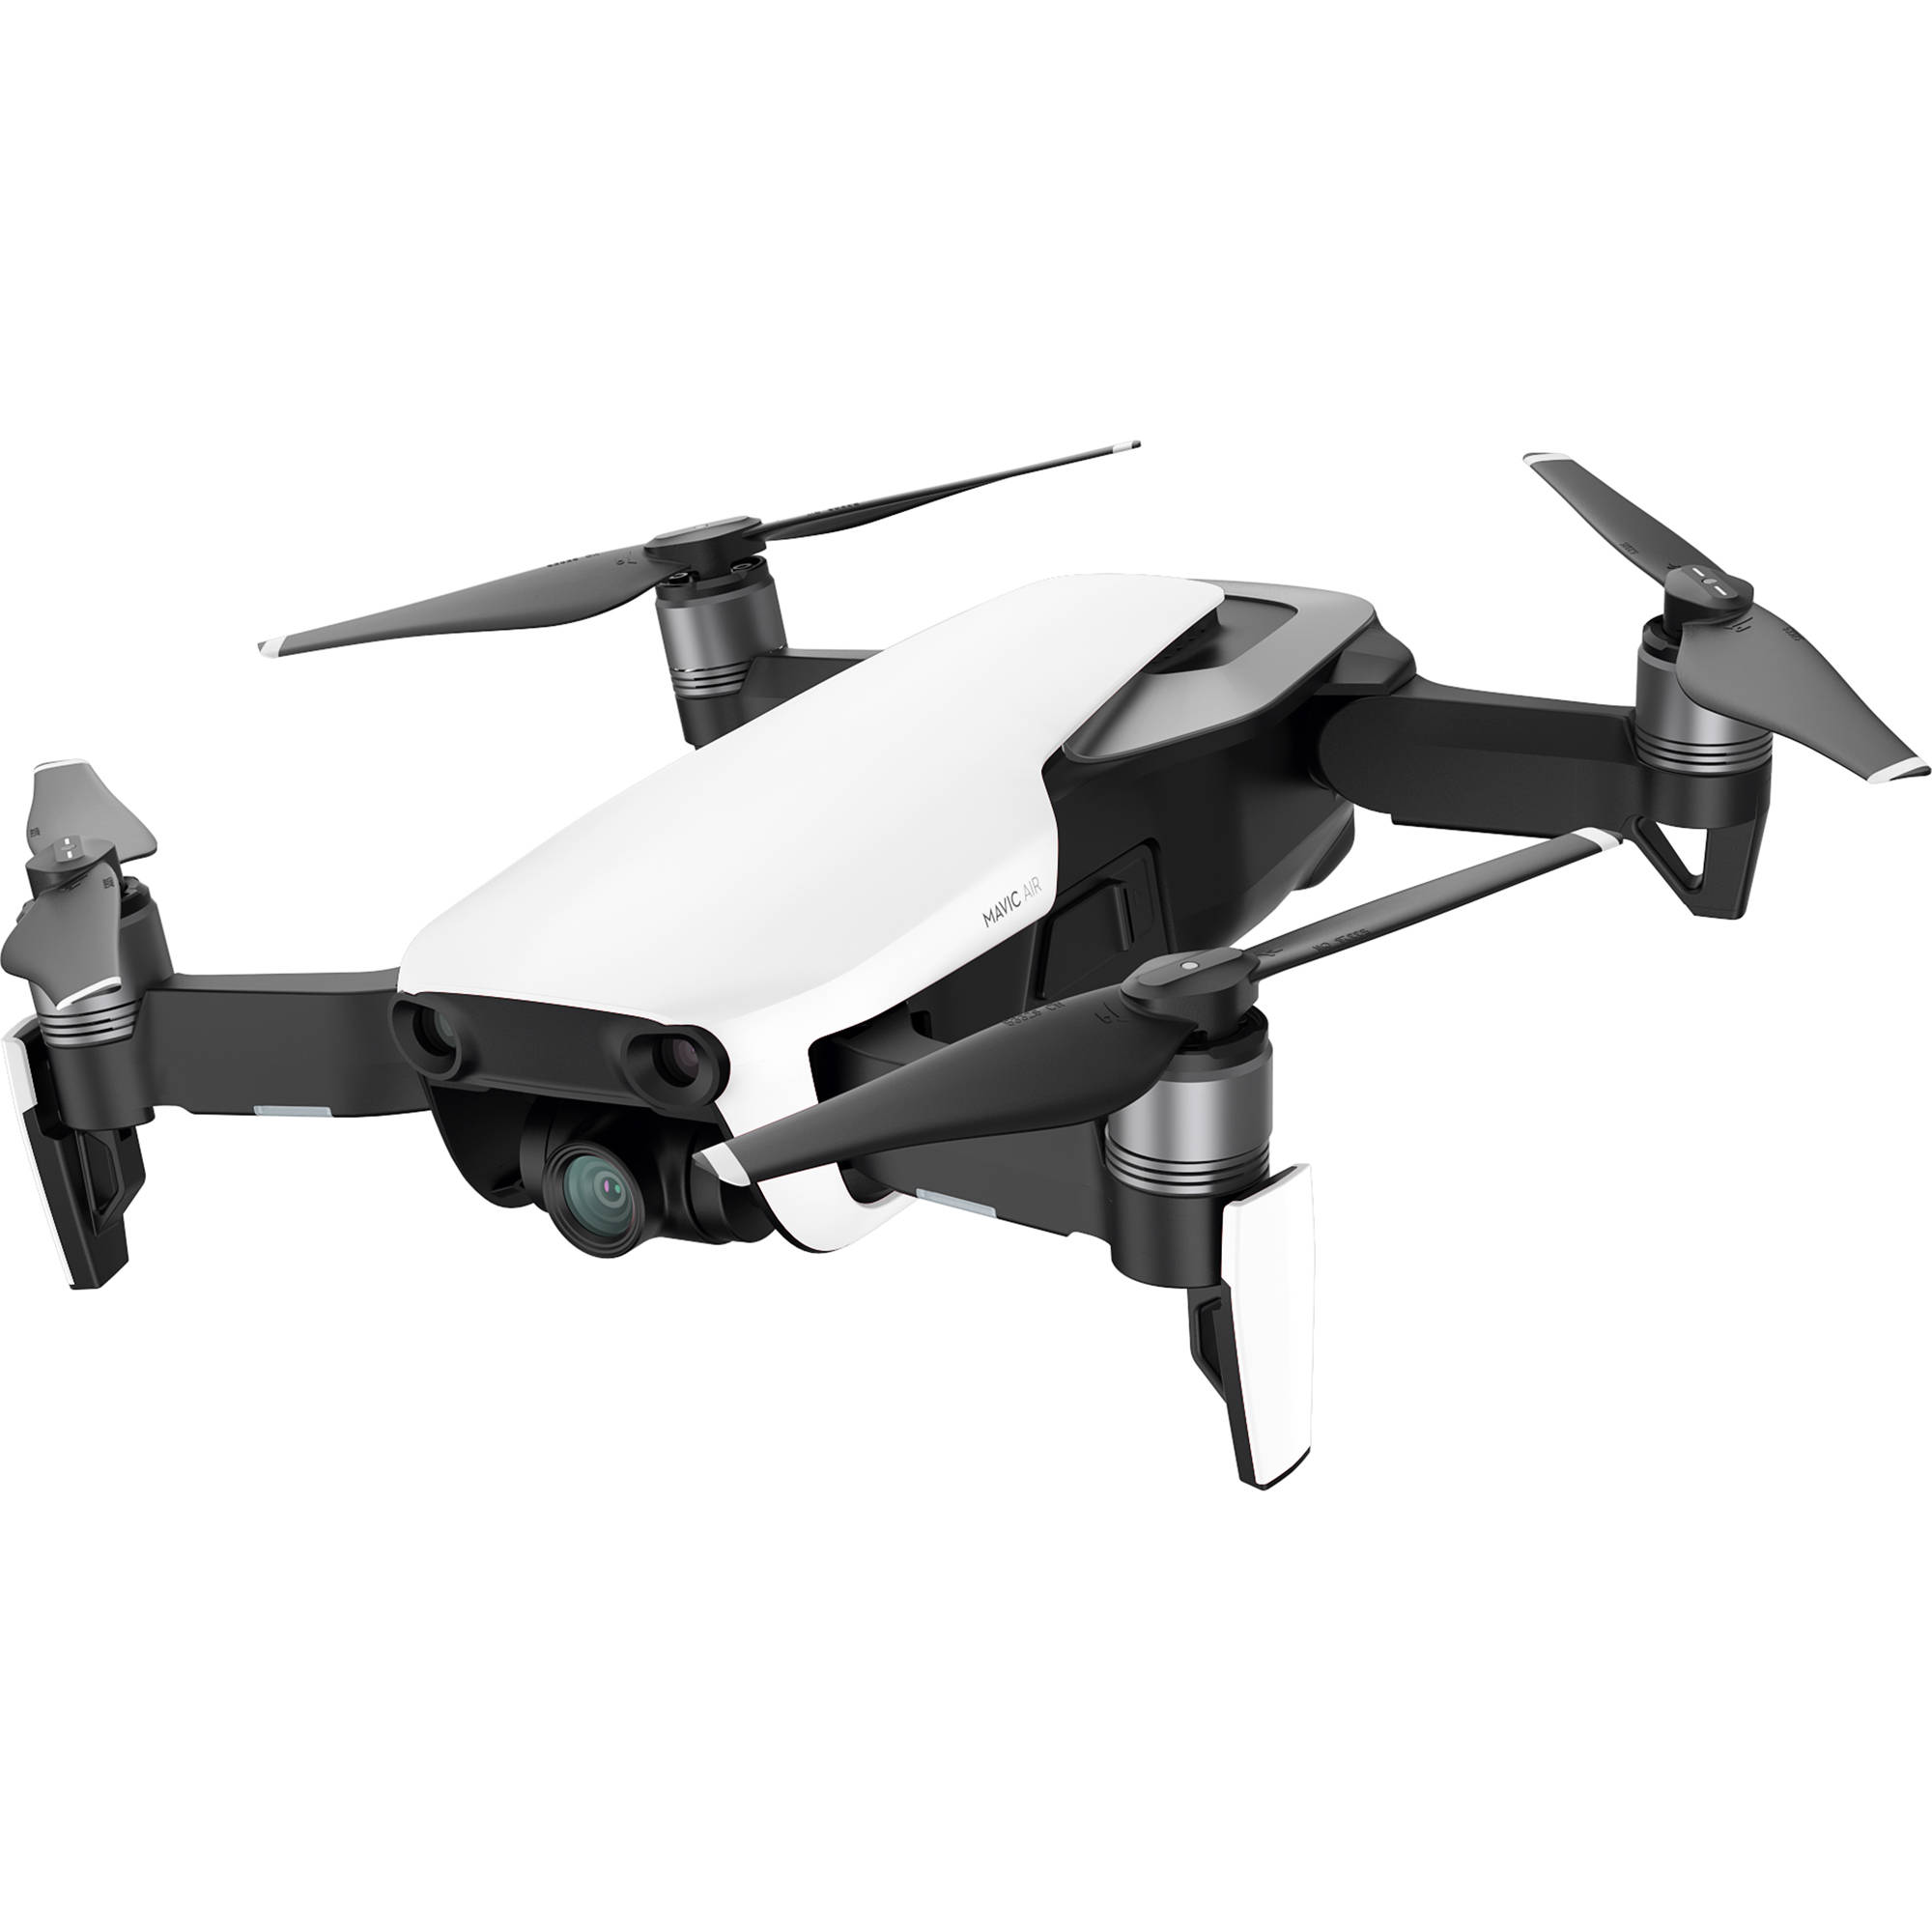 Válaszd a legkiválóbb drónokat drón onilne vásárlás során